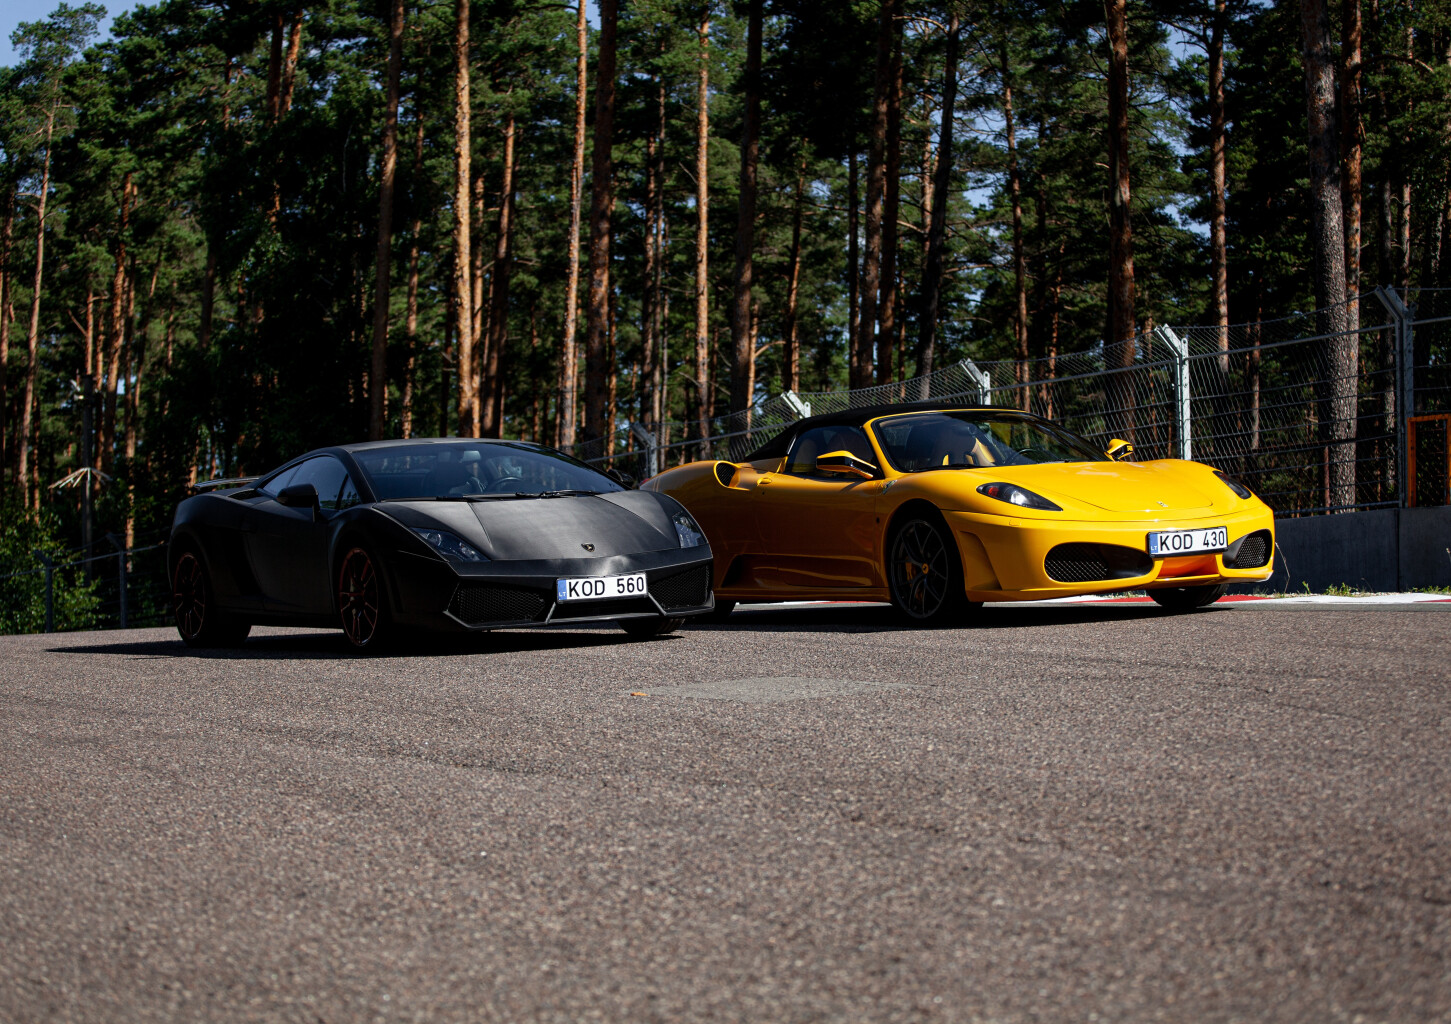 Sõiduelamus Ferrari või Lamborghiniga - "Superdrive"